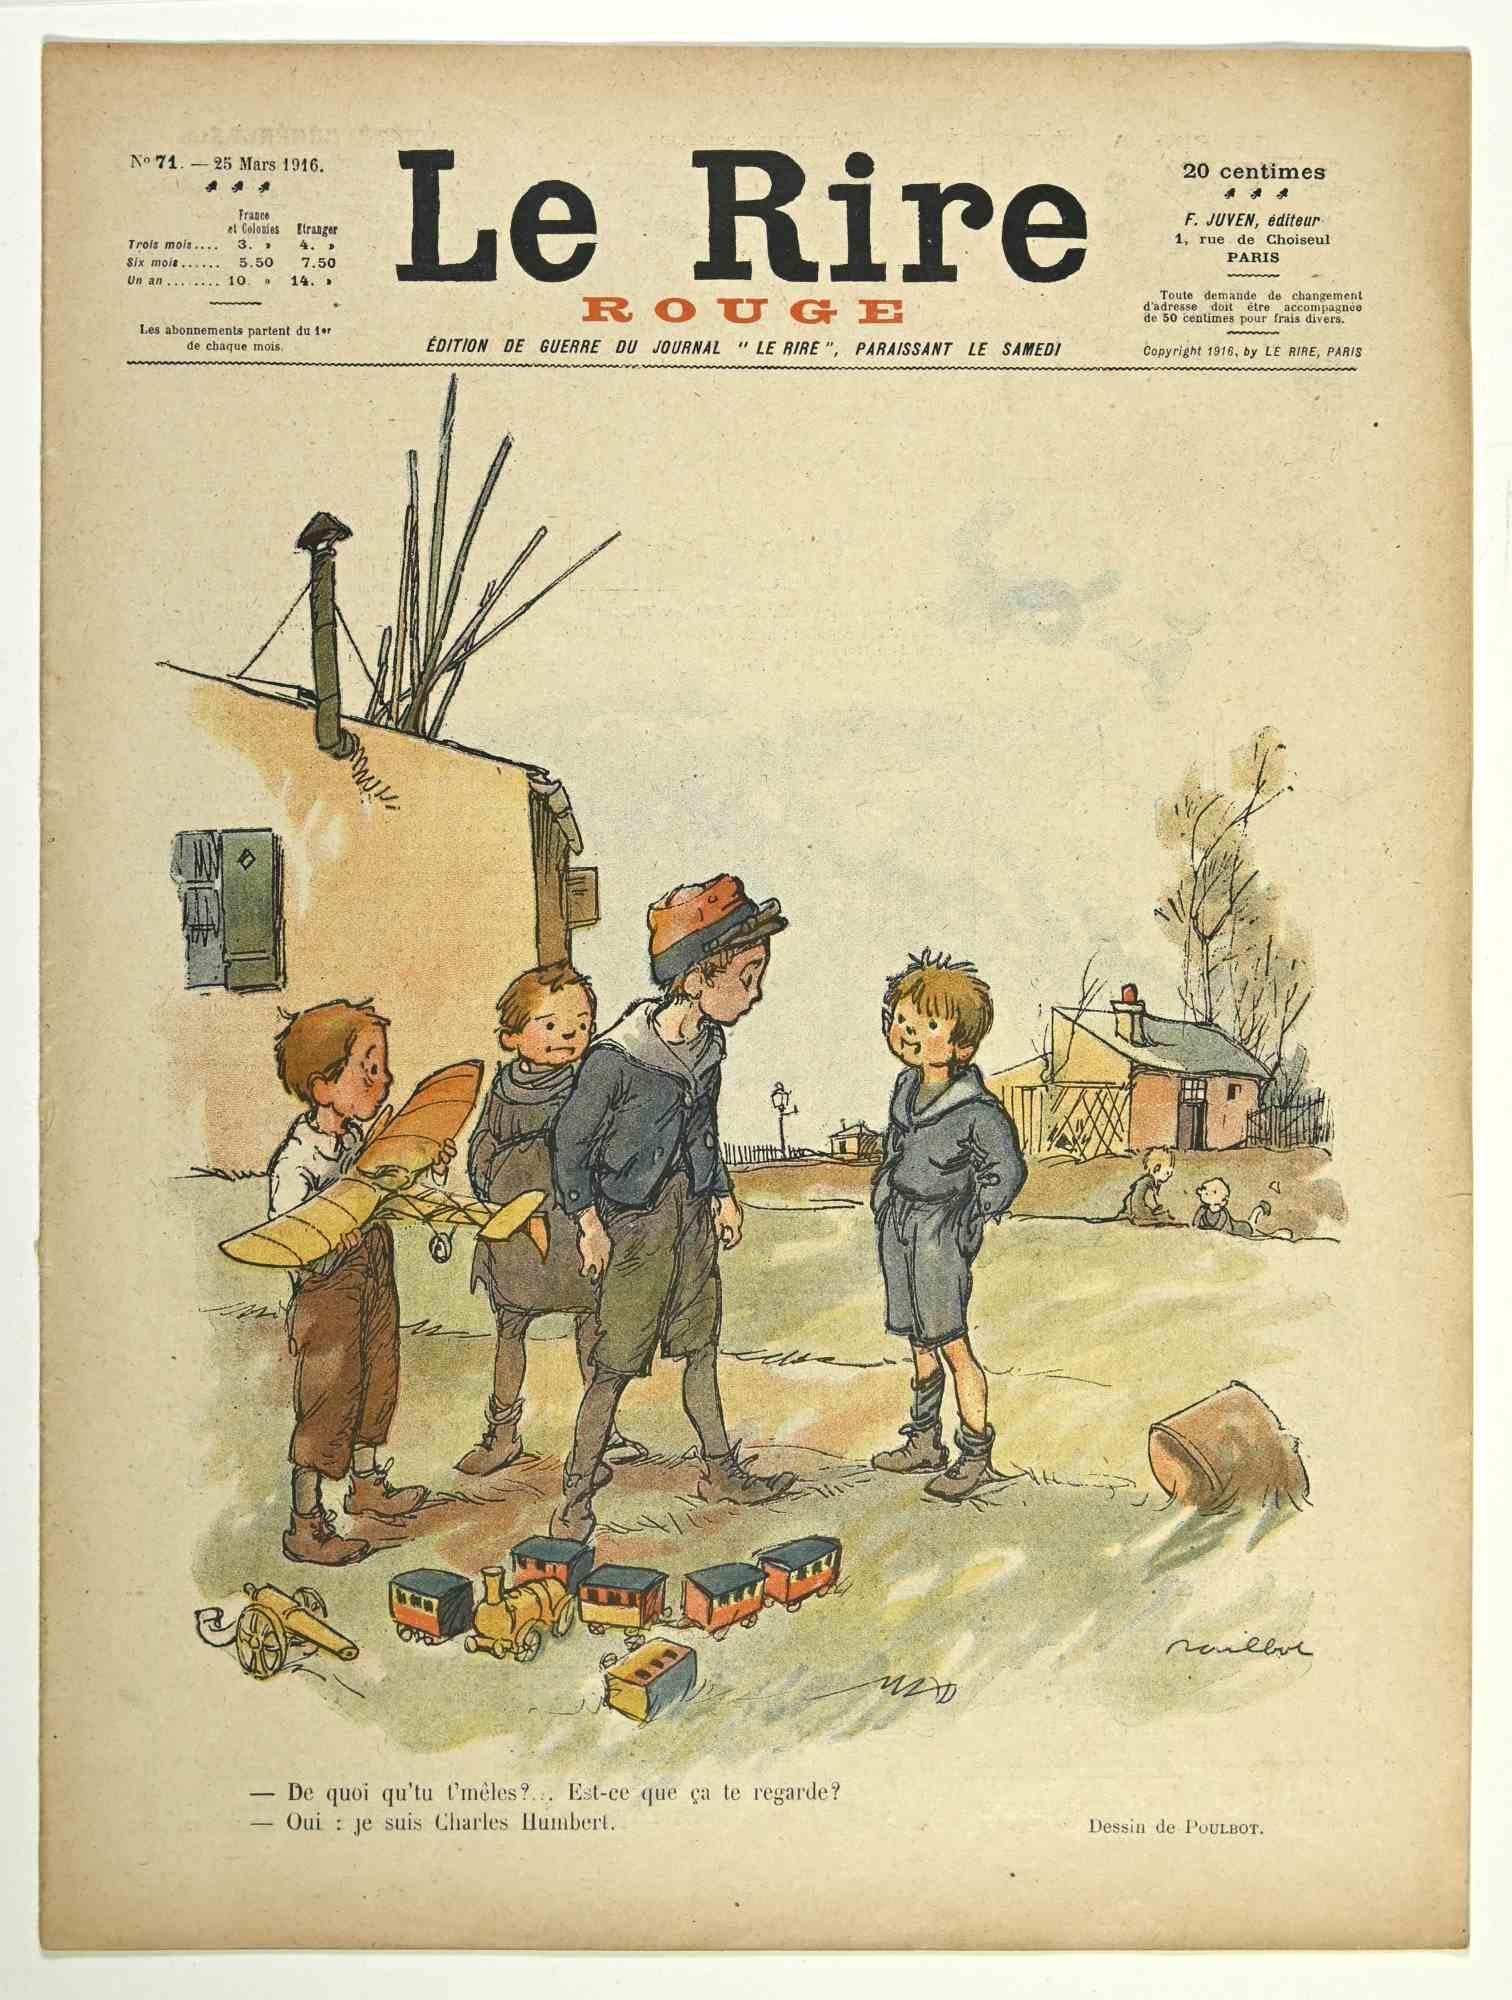 Le Rire - Rouge - Magazine comique vintage - 1916 - Art de Francisque Poulbot